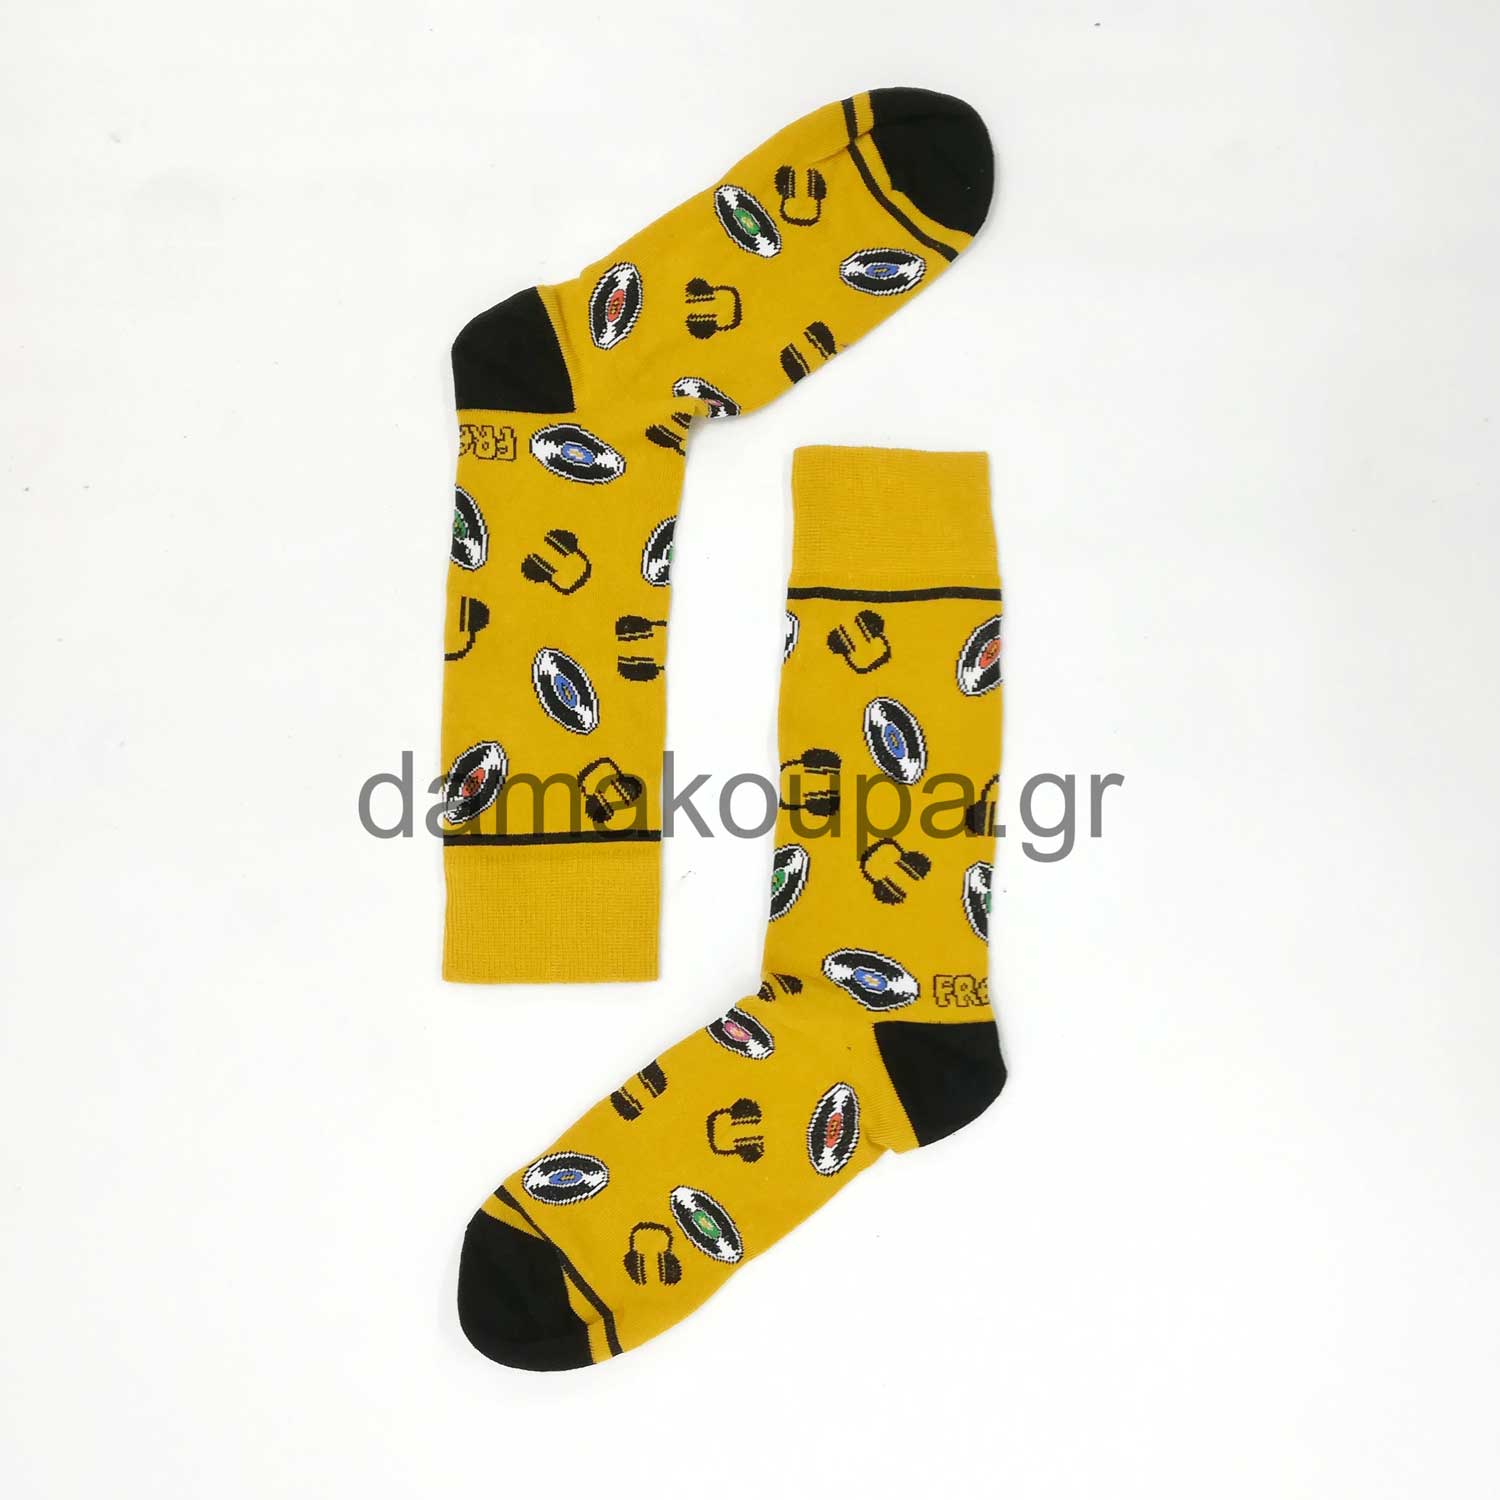 Κίτρινη κάλτσα με σχέδια